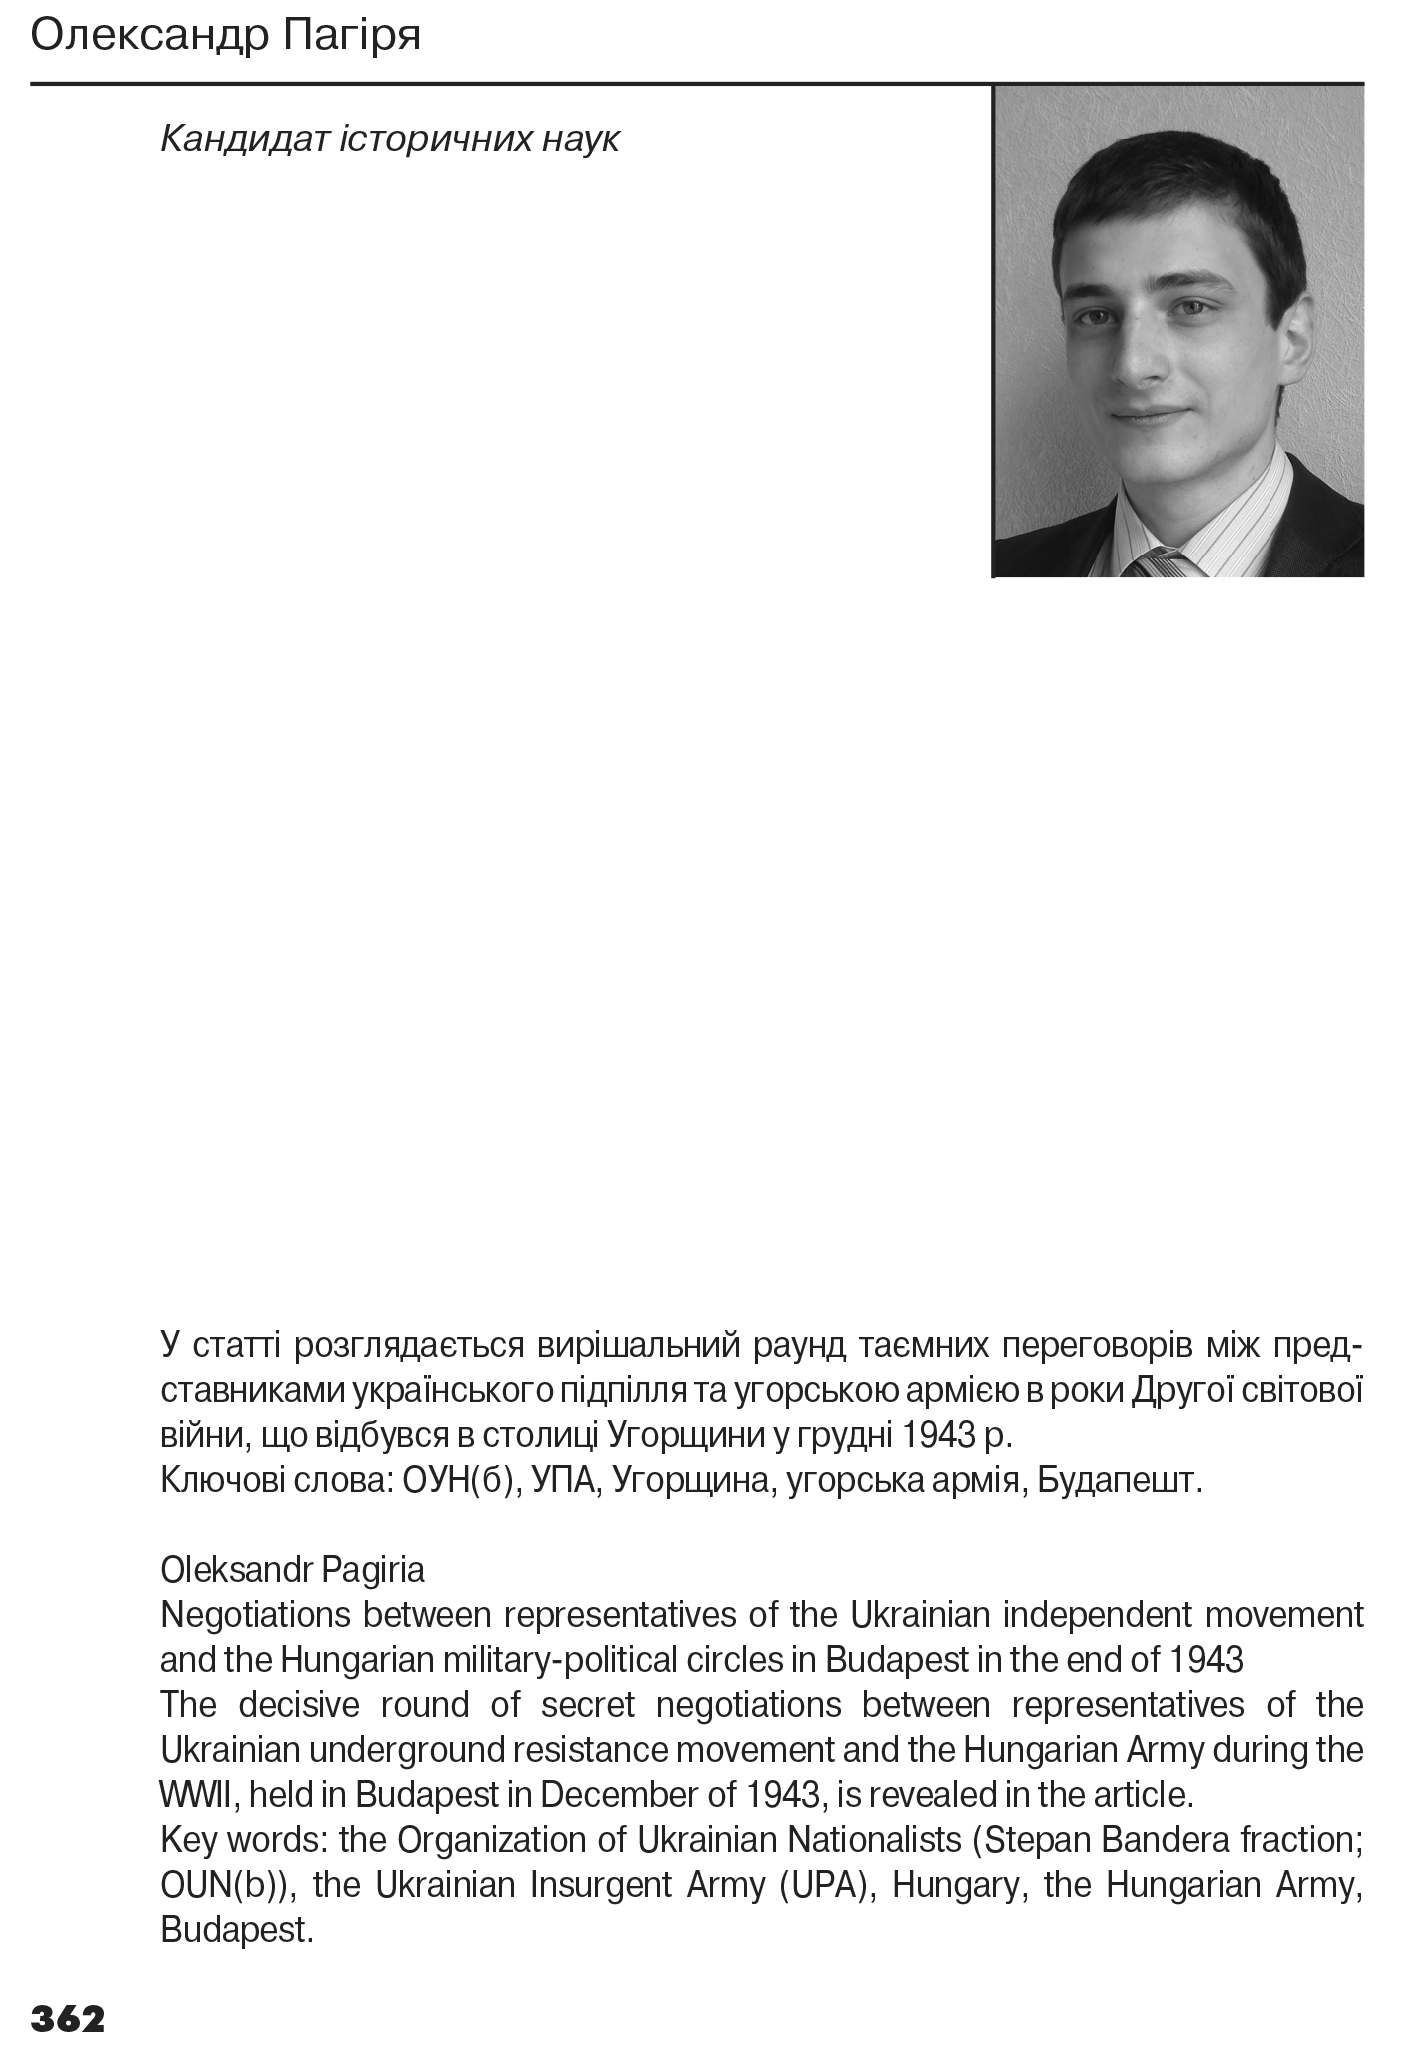 Український визвольний рух №19, ст. 362 - 383